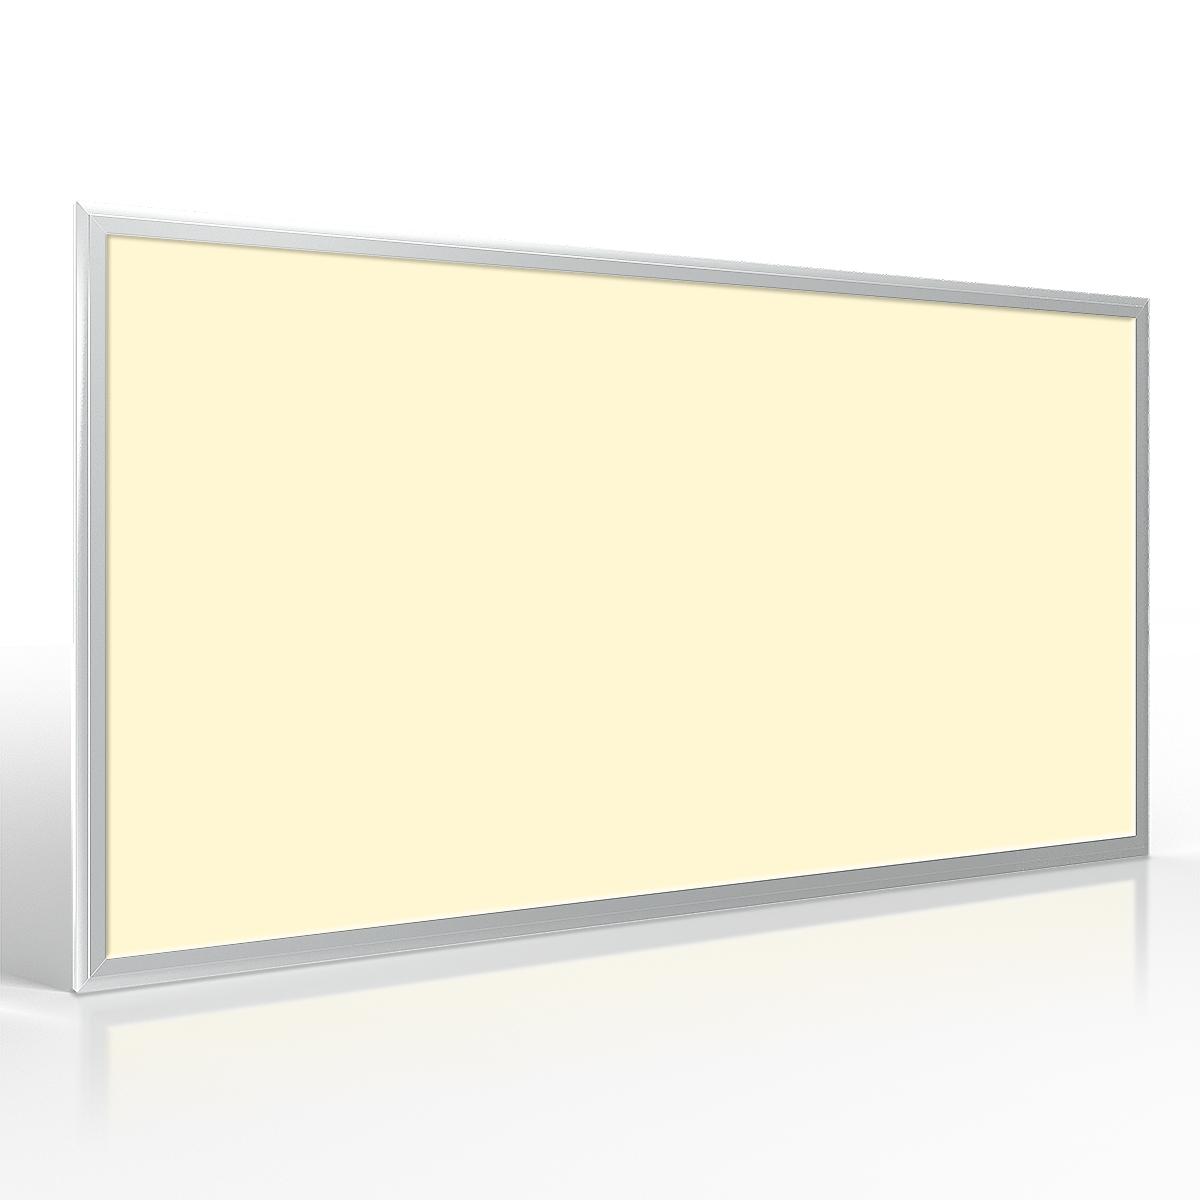 LED Panel 120x60cm 60W Rahmen silber - Lichtfarbe: Warmweiß 3000K